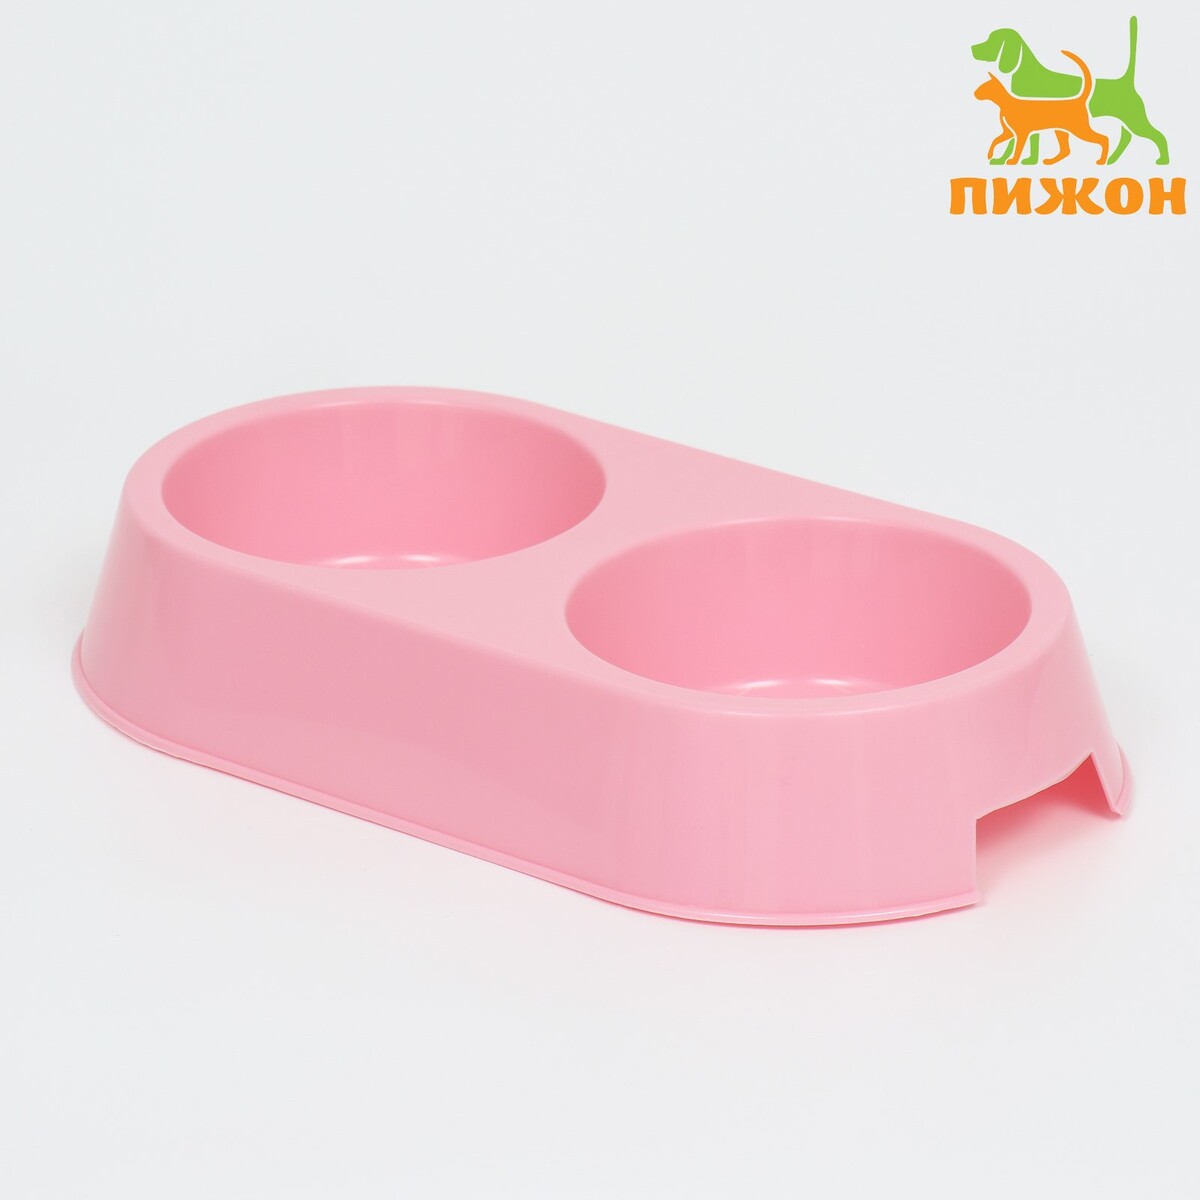 Миска пластиковая двойная 29,5 х 16,5 х 5 см, нежно розовая миска пластиковая медленное кормление18 х 18 5 х 5 5 см розовая